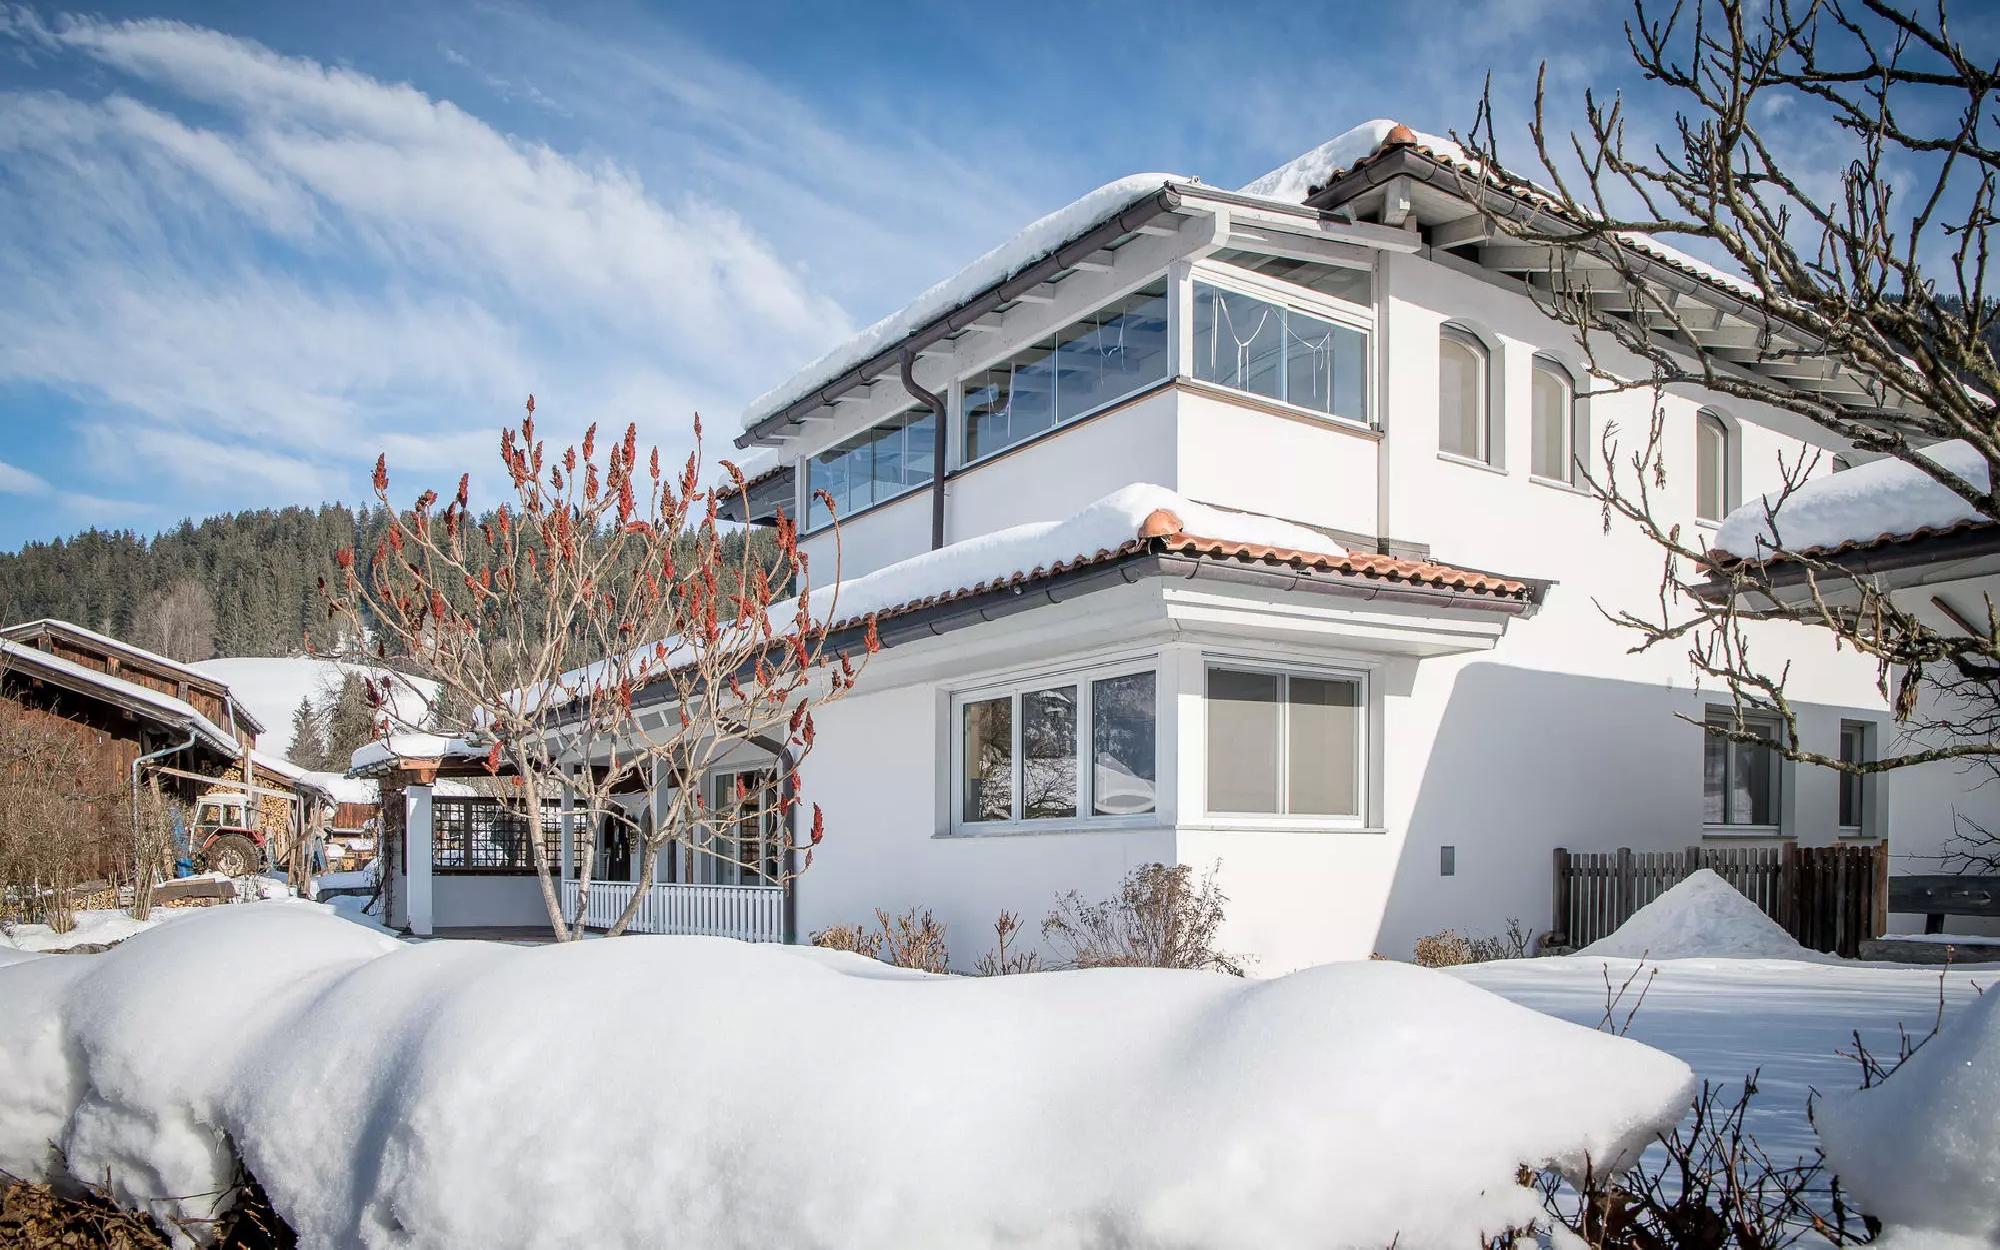 Mediterranean Villa in the snow Alps for Sale